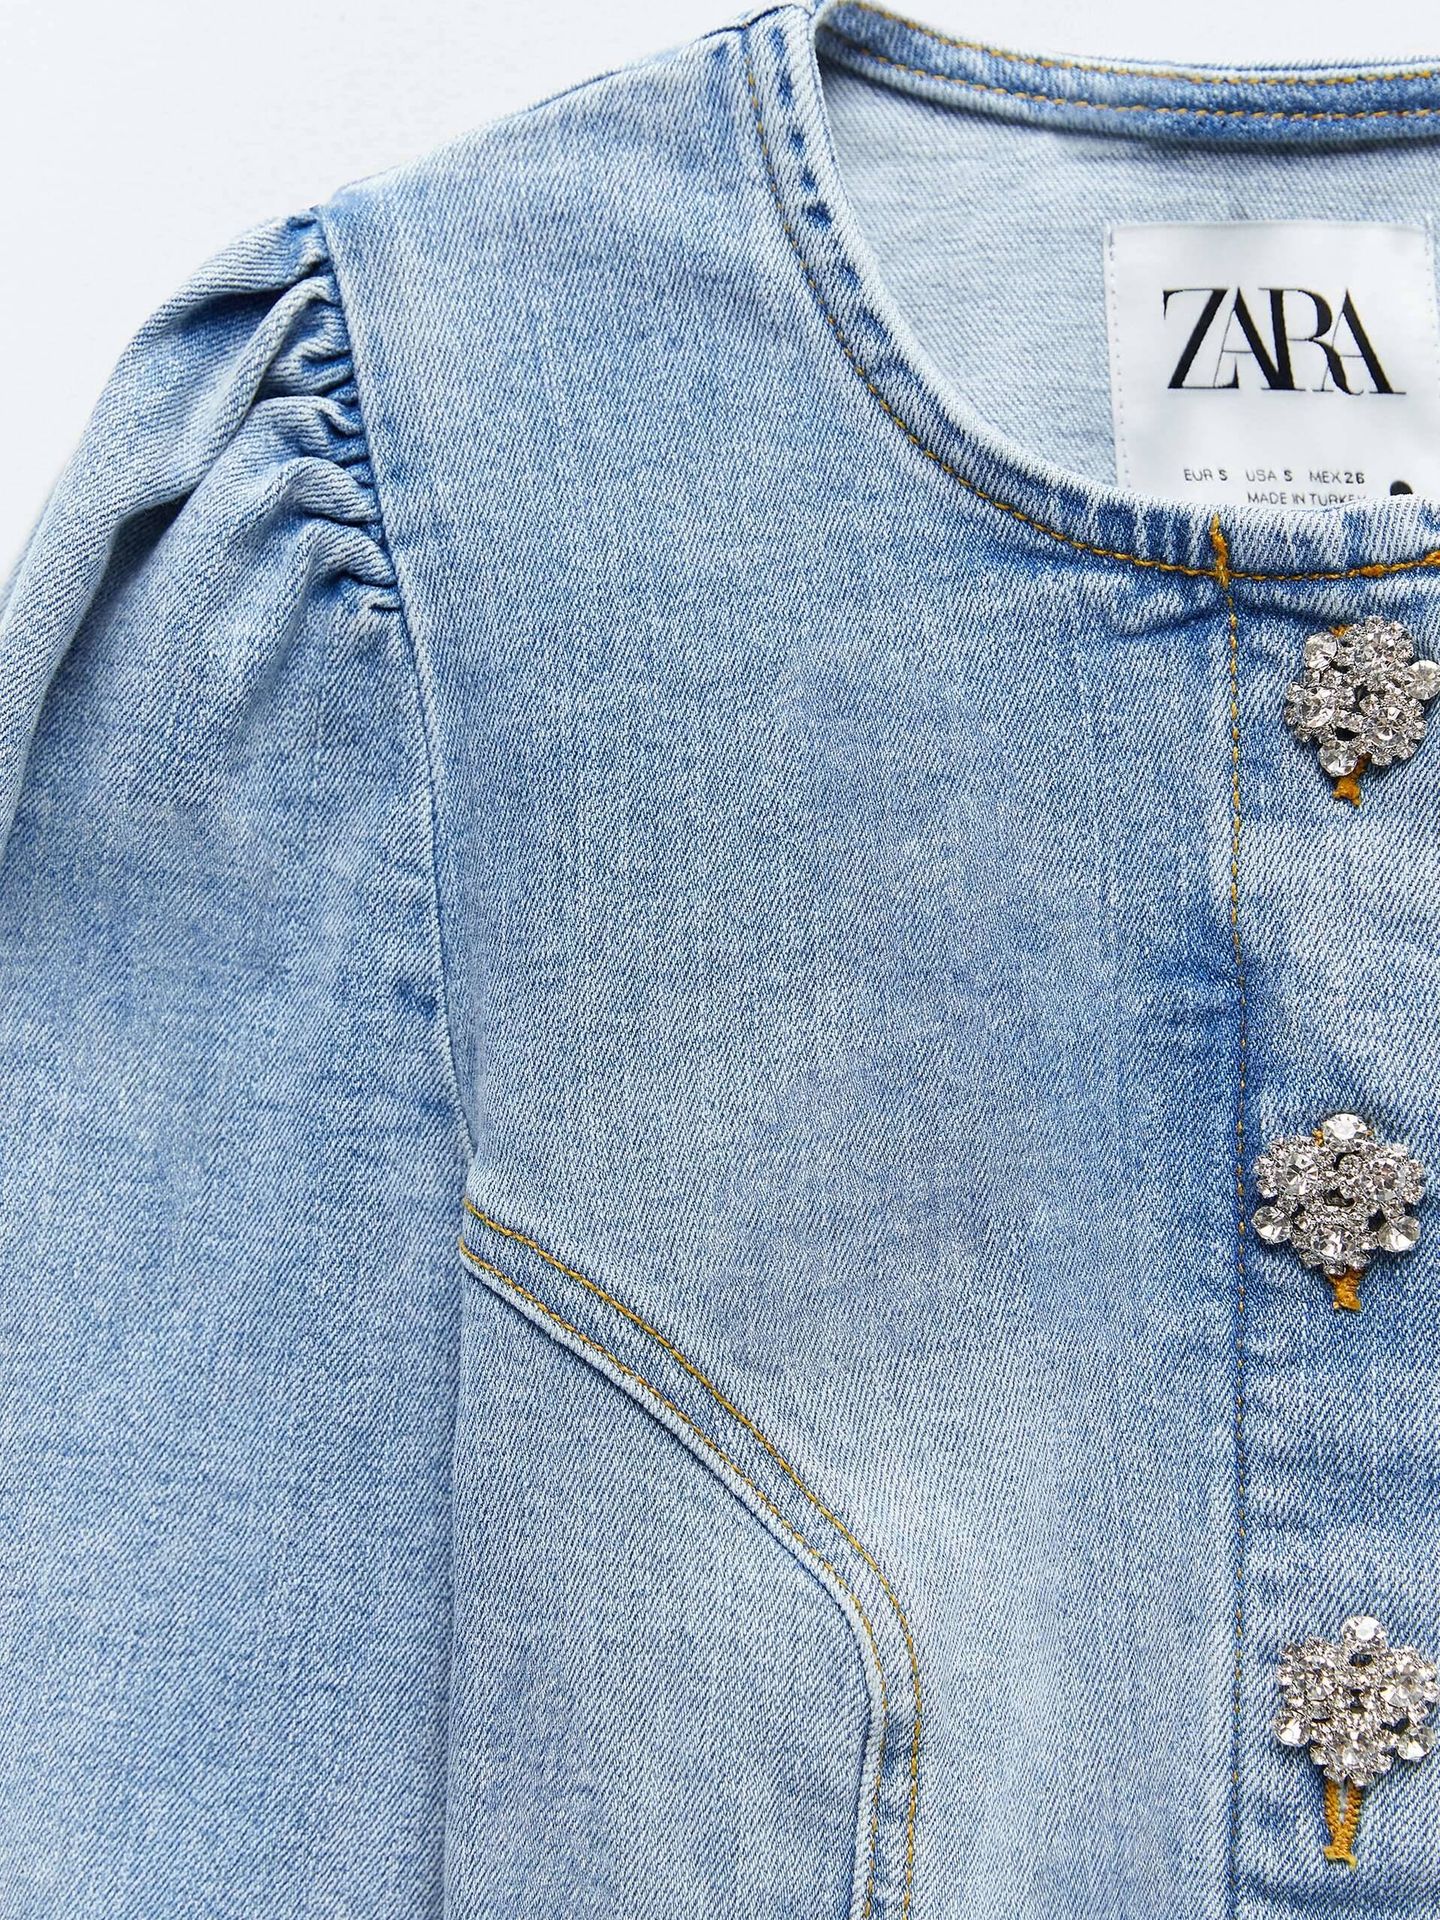 El conjunto denim de Zara. (Cortesía)